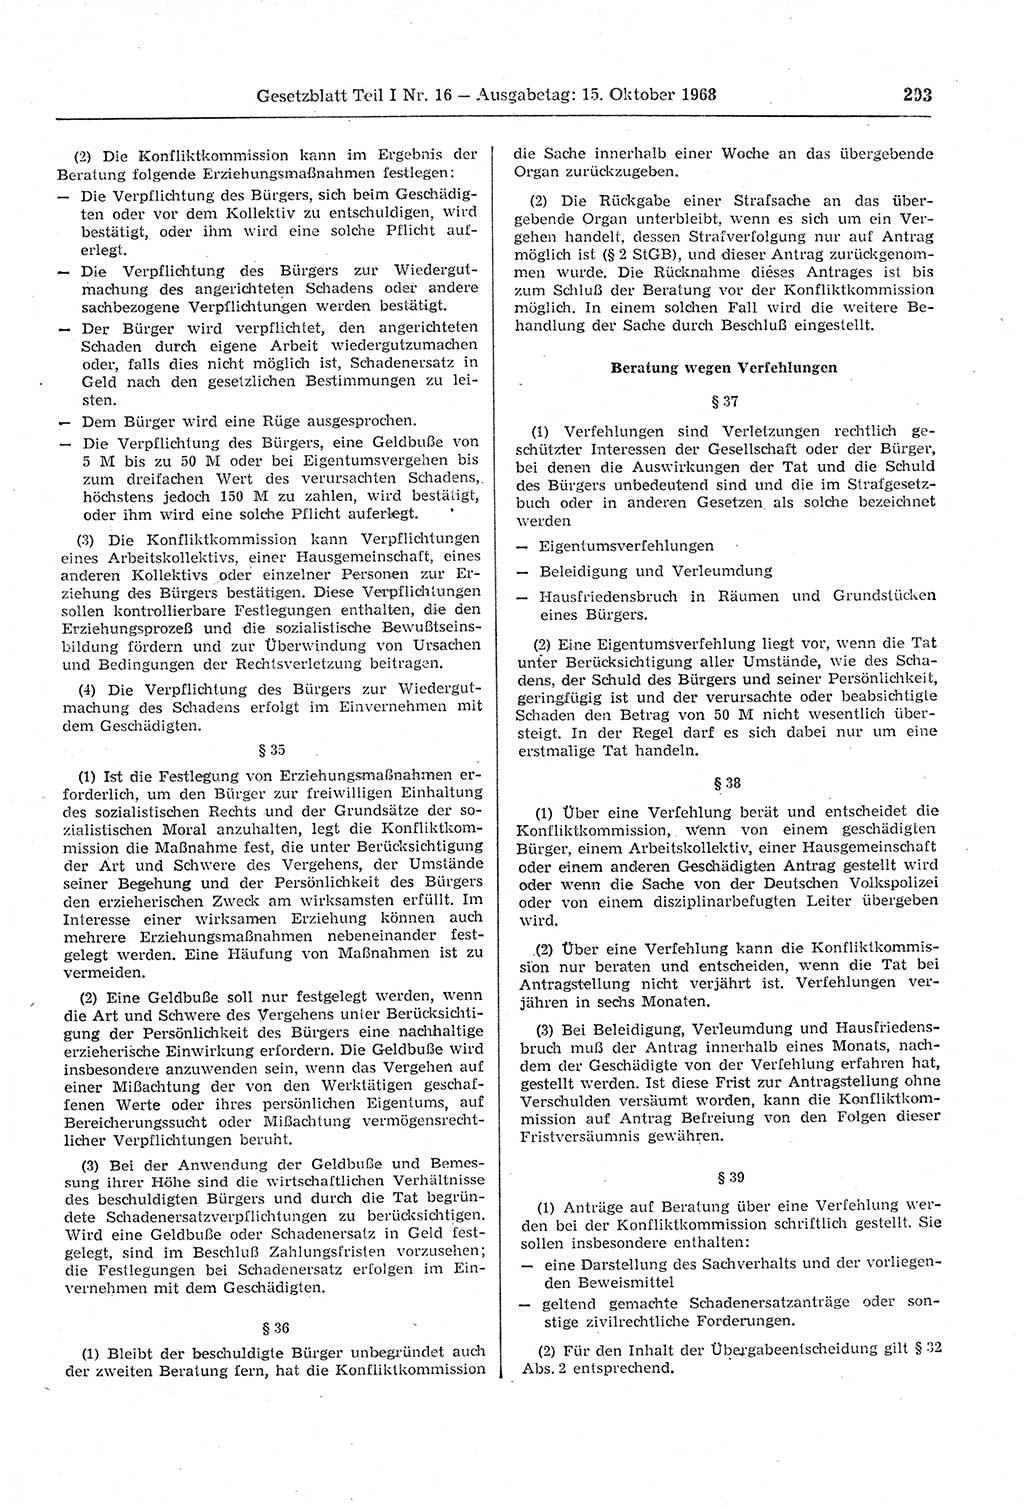 Gesetzblatt (GBl.) der Deutschen Demokratischen Republik (DDR) Teil Ⅰ 1968, Seite 293 (GBl. DDR Ⅰ 1968, S. 293)